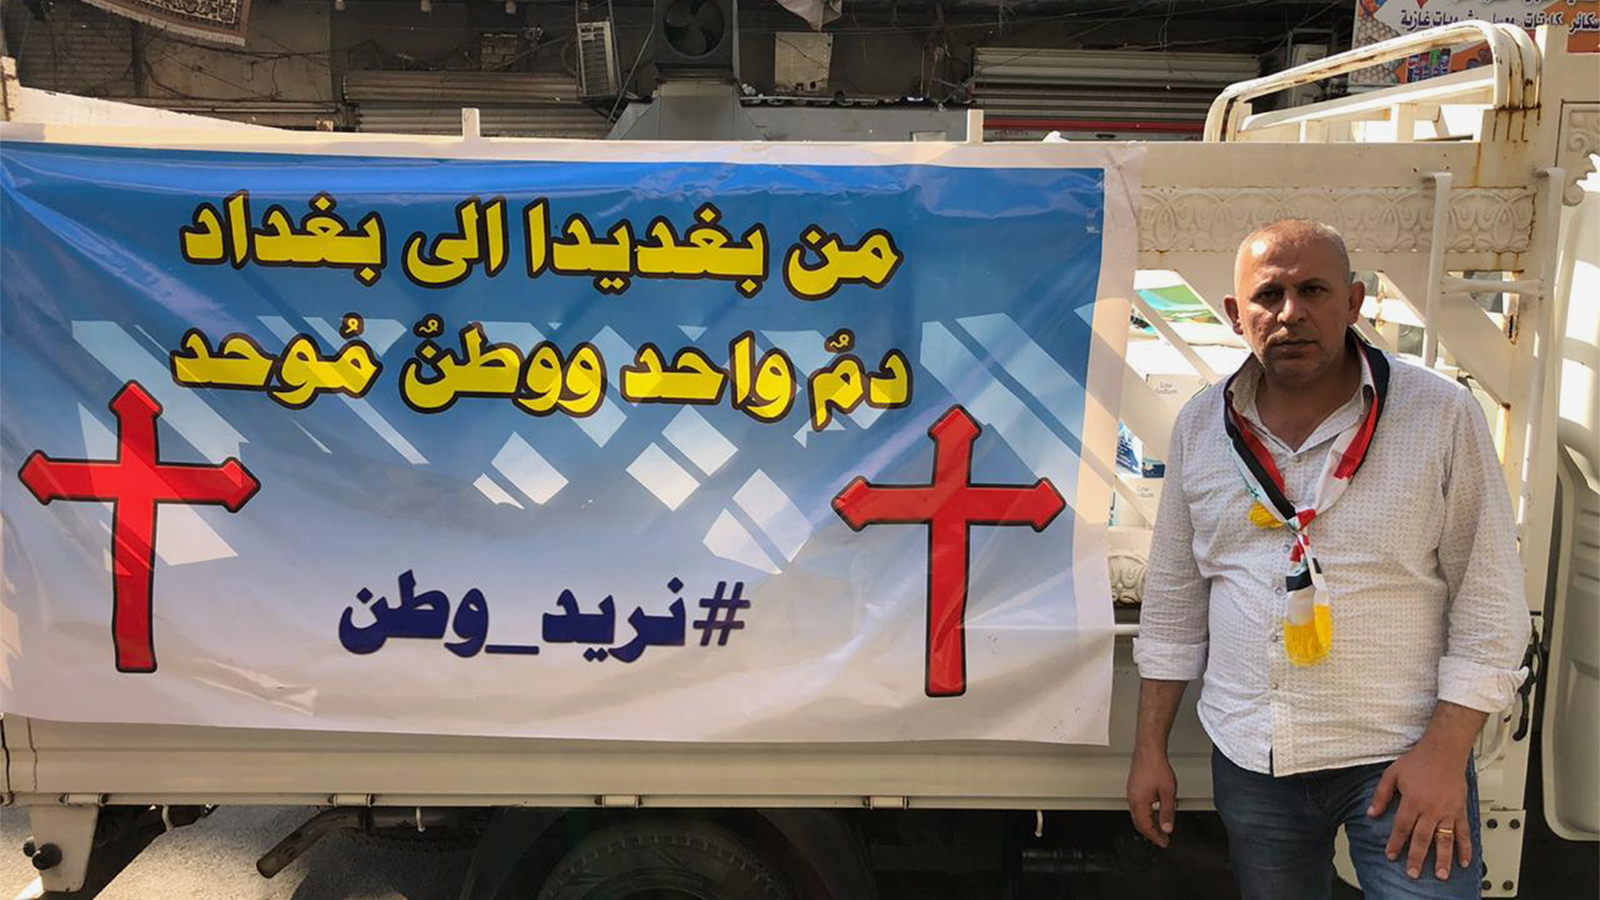 مسيحيو بغديدا في نينوى يعبرون عن تضامنهم مع بغداد (الجزيرة)